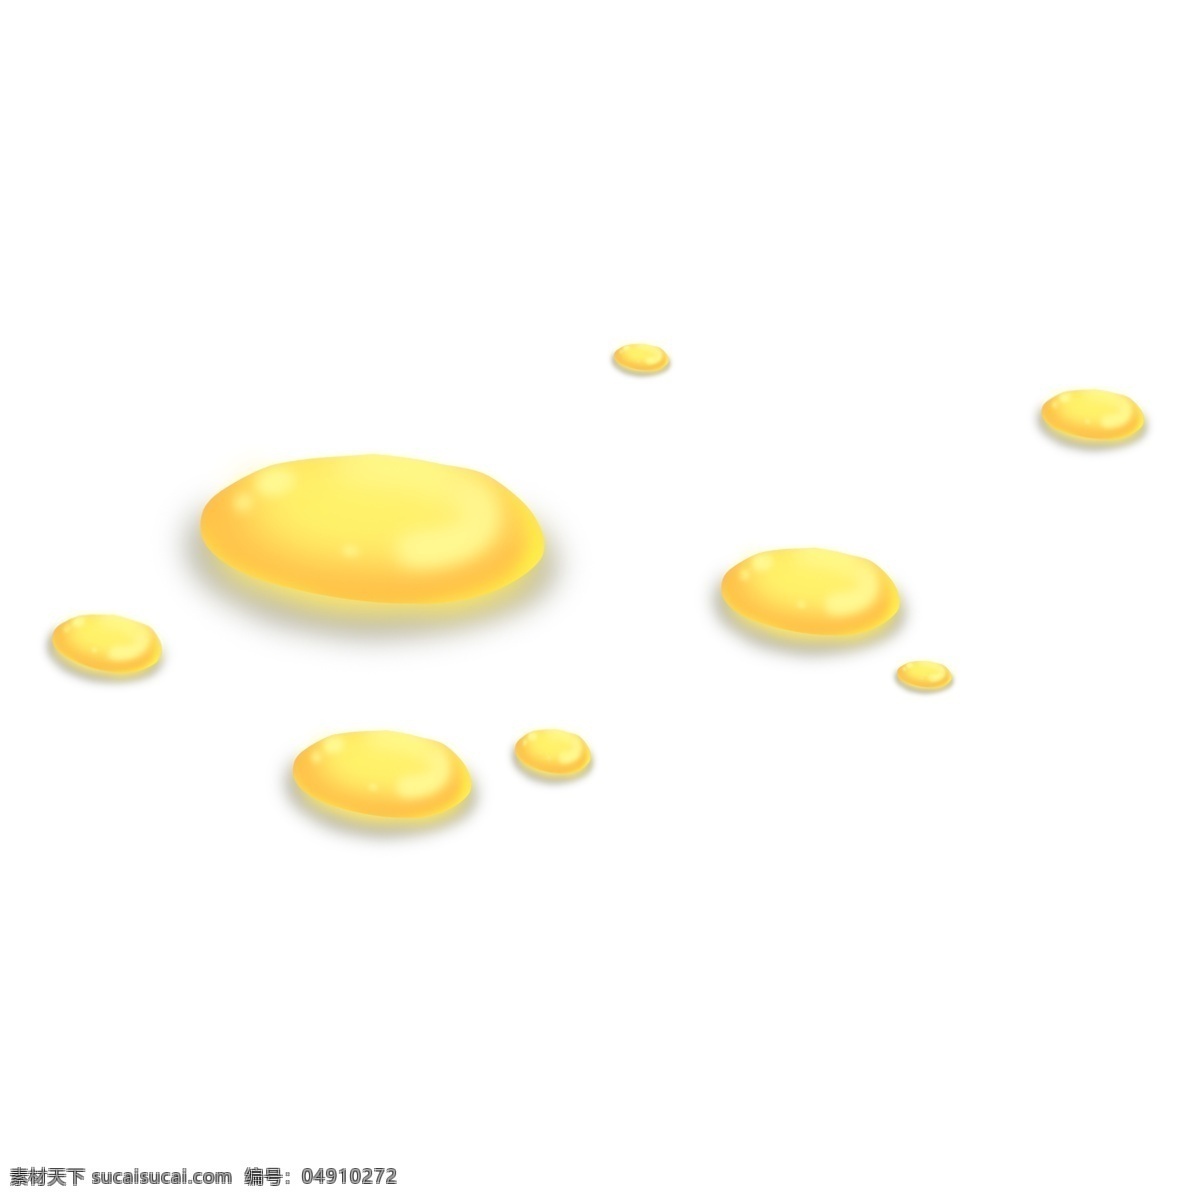 金黄色 扁平 滴落 油 滴 油滴 金色 浅黄色 黄色 扁形 水珠 金子 落下 水平面 水滴 水 液体